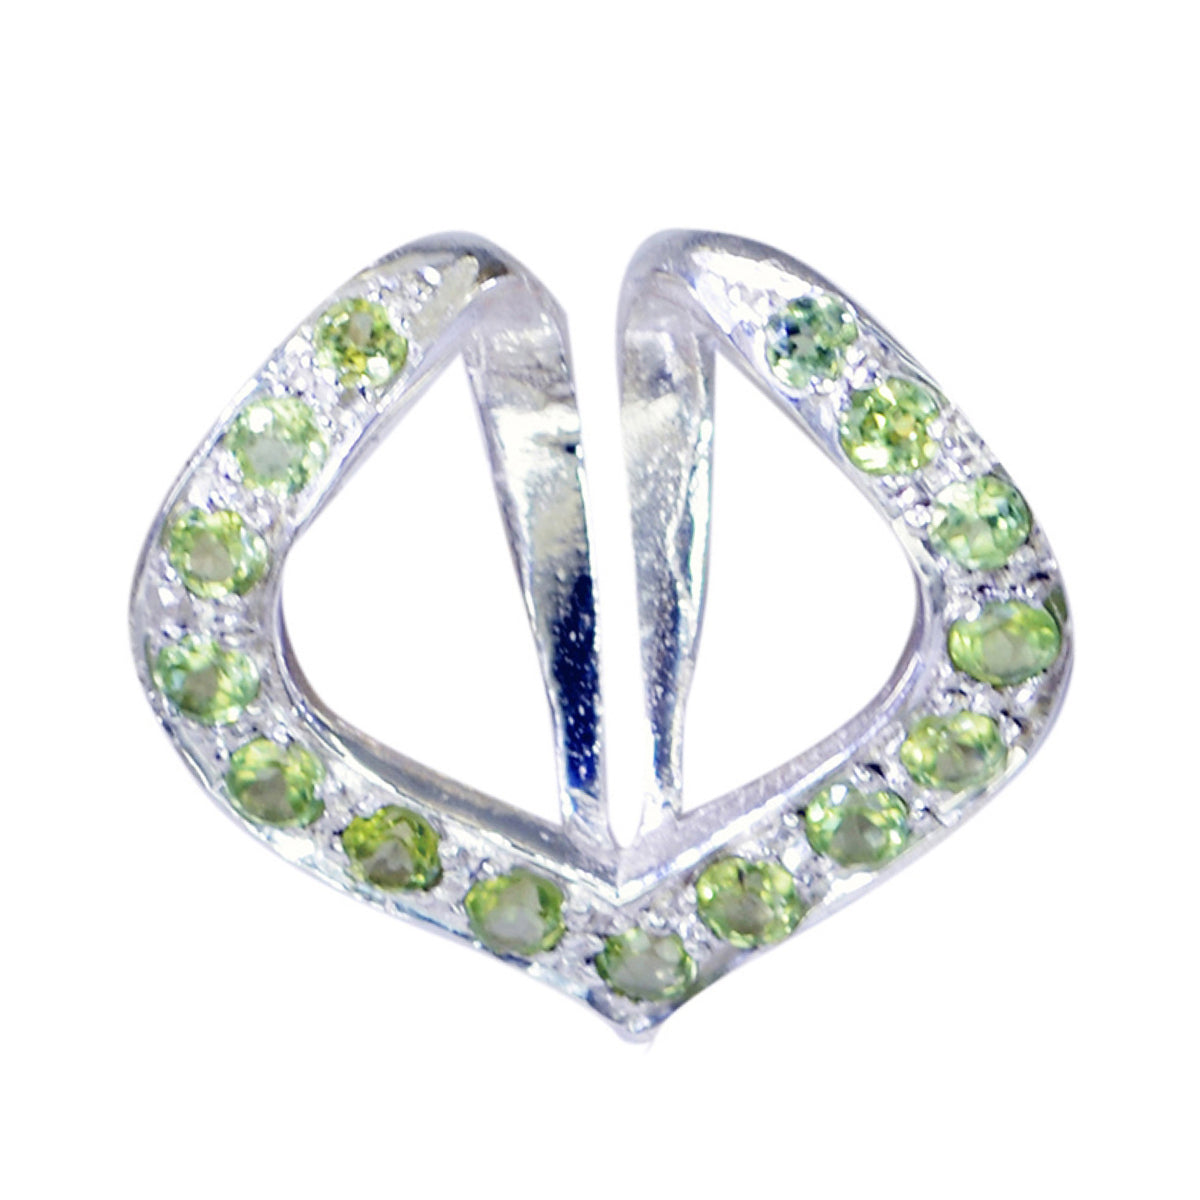 Riyo pierres précieuses gracieuses pendentif rond en argent massif péridot vert à facettes cadeau pour mariage